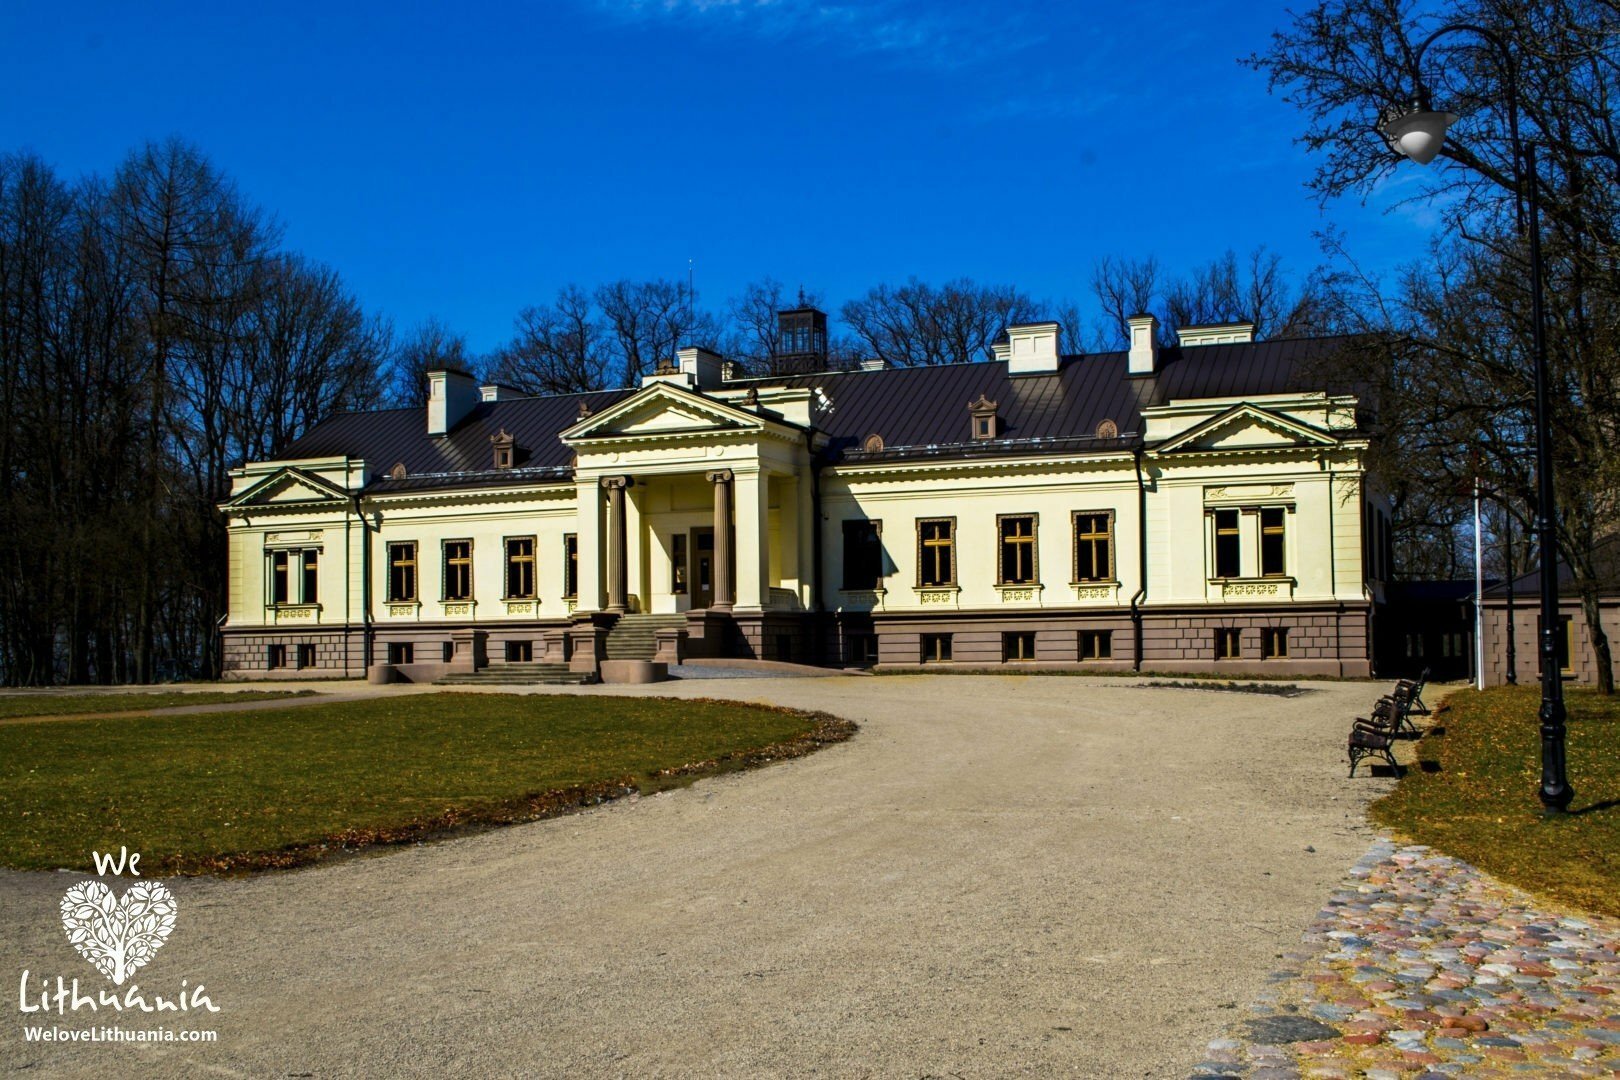 Gelgaudiškio dvaras – XIX a. architektūros ansamblis, esantis Šakių rajone